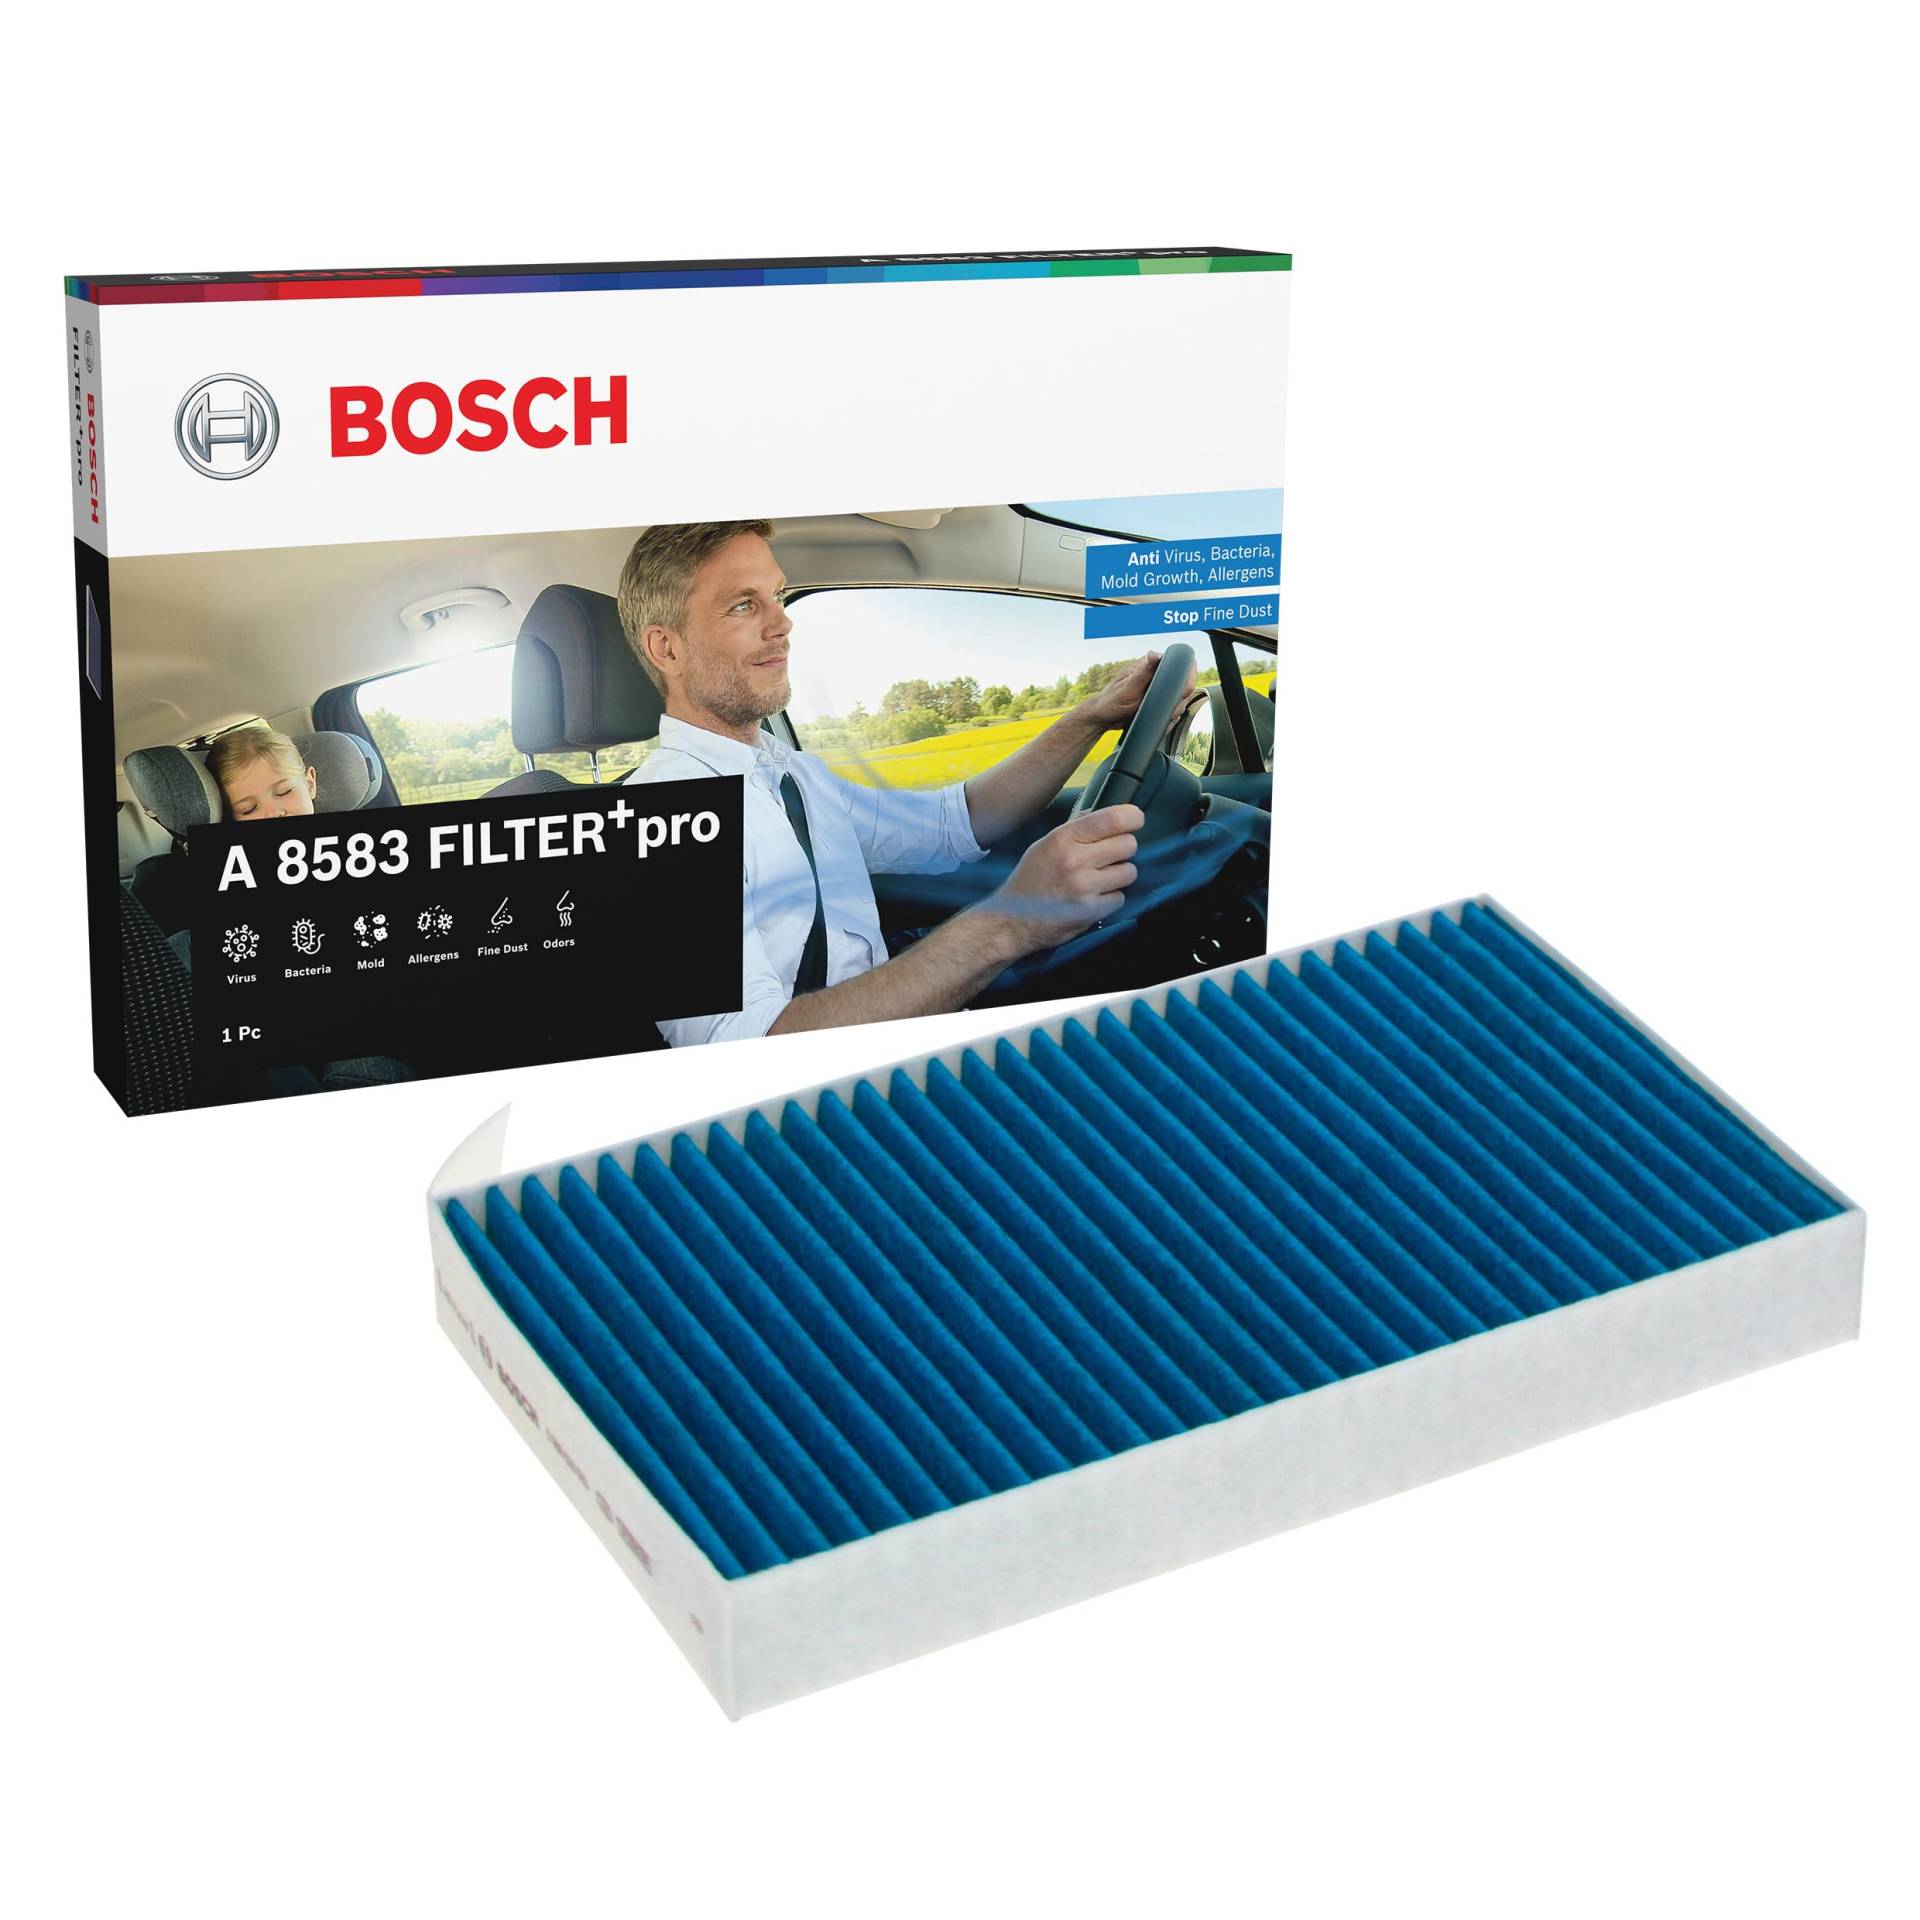 Bosch A8583 - Innenraumfilter FILTER+pro antibakteriell, wirksam gegen übel riechende Gase, Viren, Schimmel, Feinstaub und Allergene von Bosch Automotive